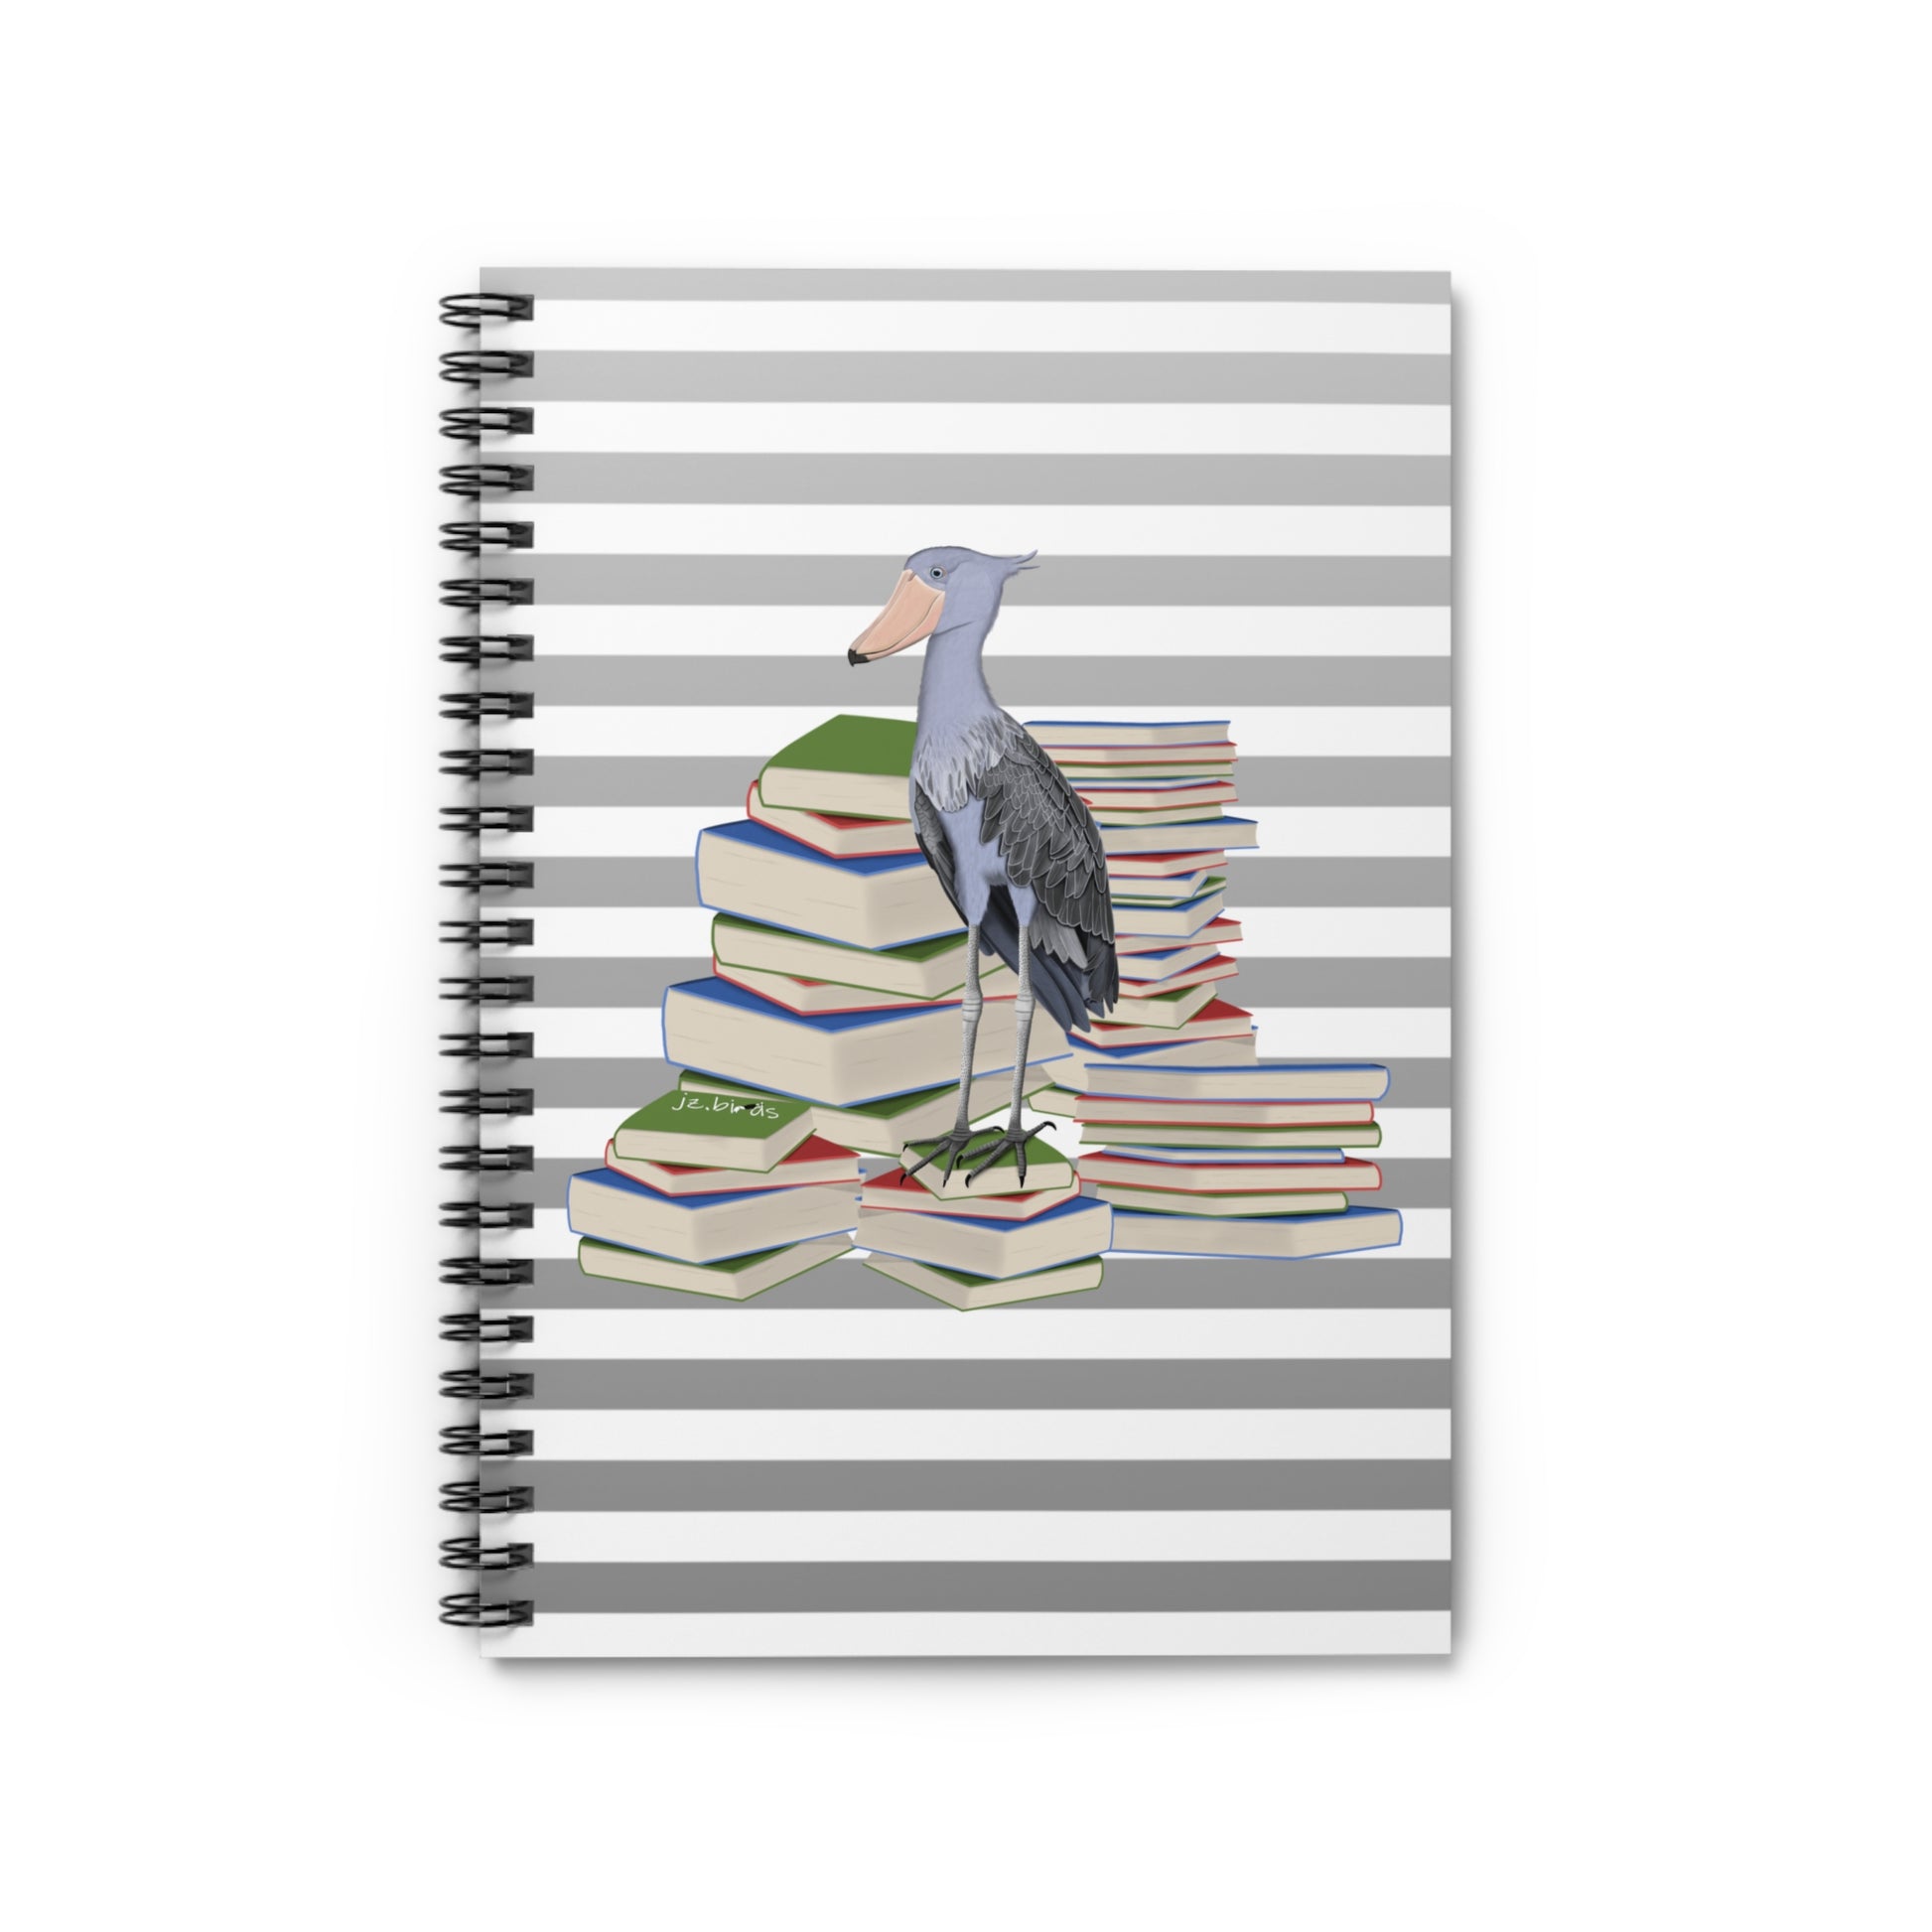 Shoebill Bird with Books Birdlover Bookworm Spiral Notebook Ruled Line